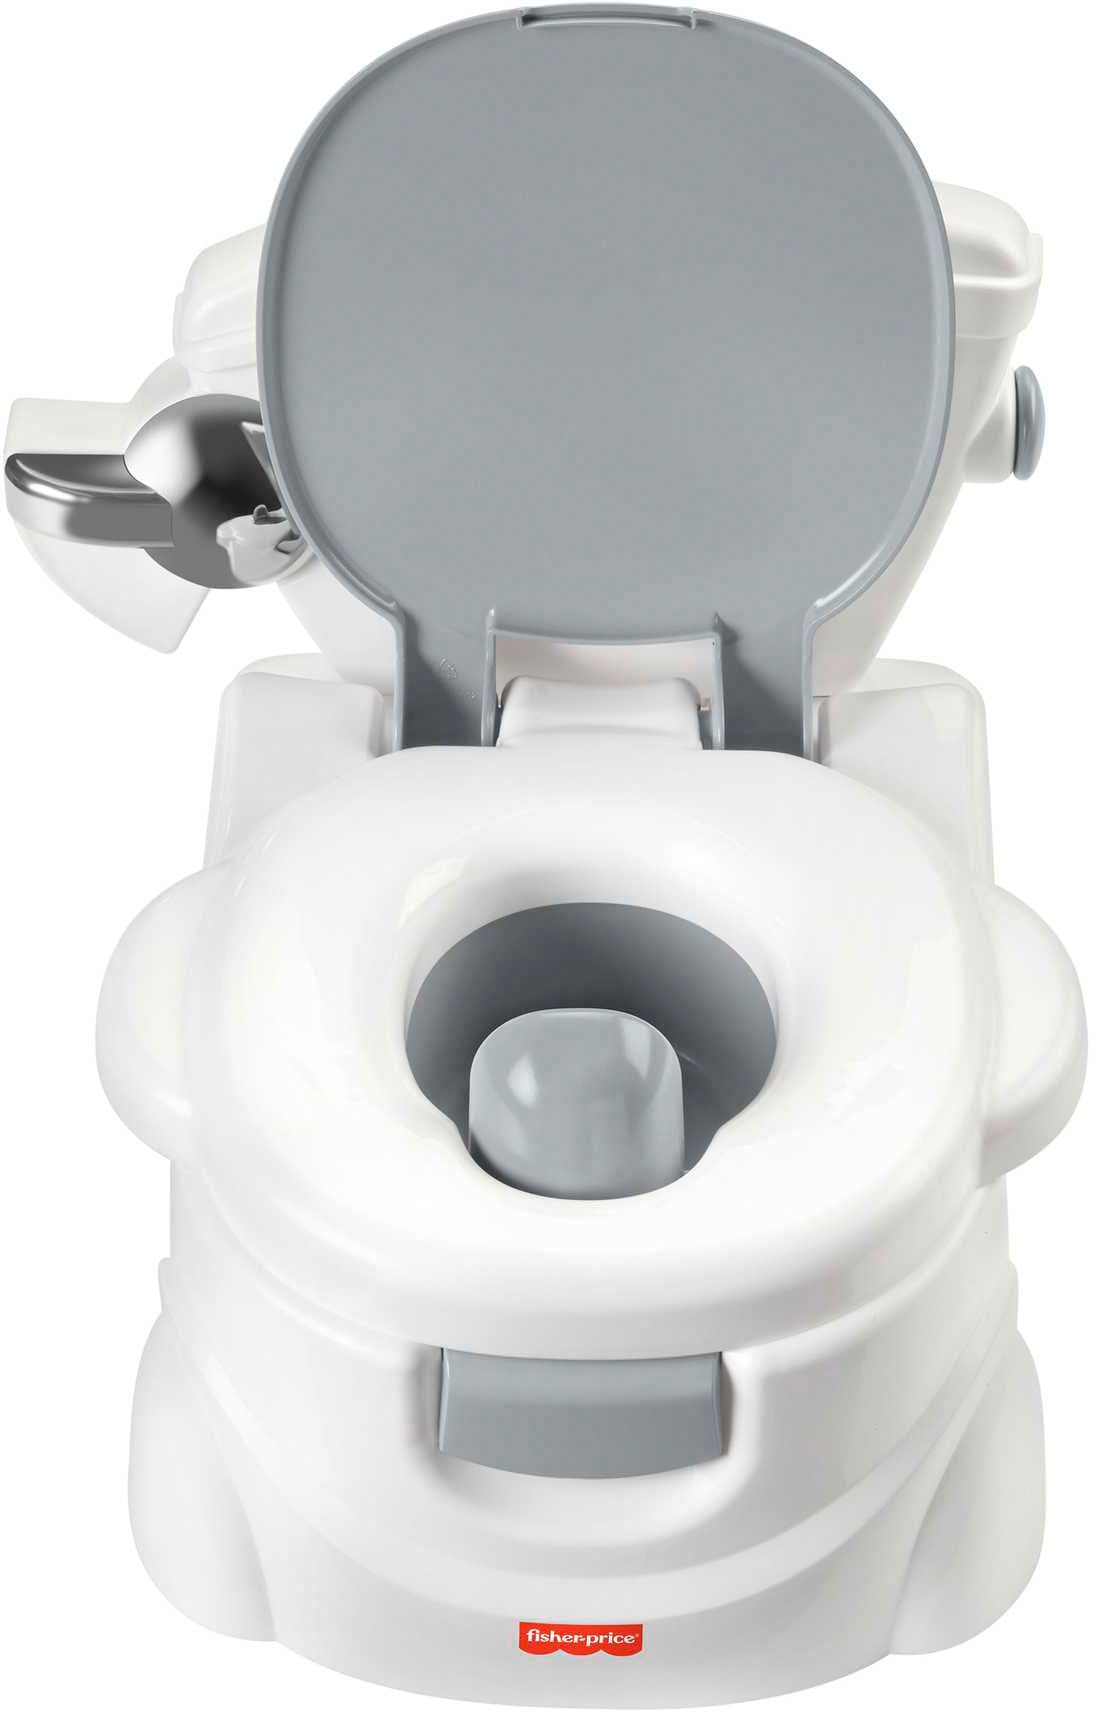 Fisher-Price® Toilettentrainer »Meine erste Toilette« OTTO bei